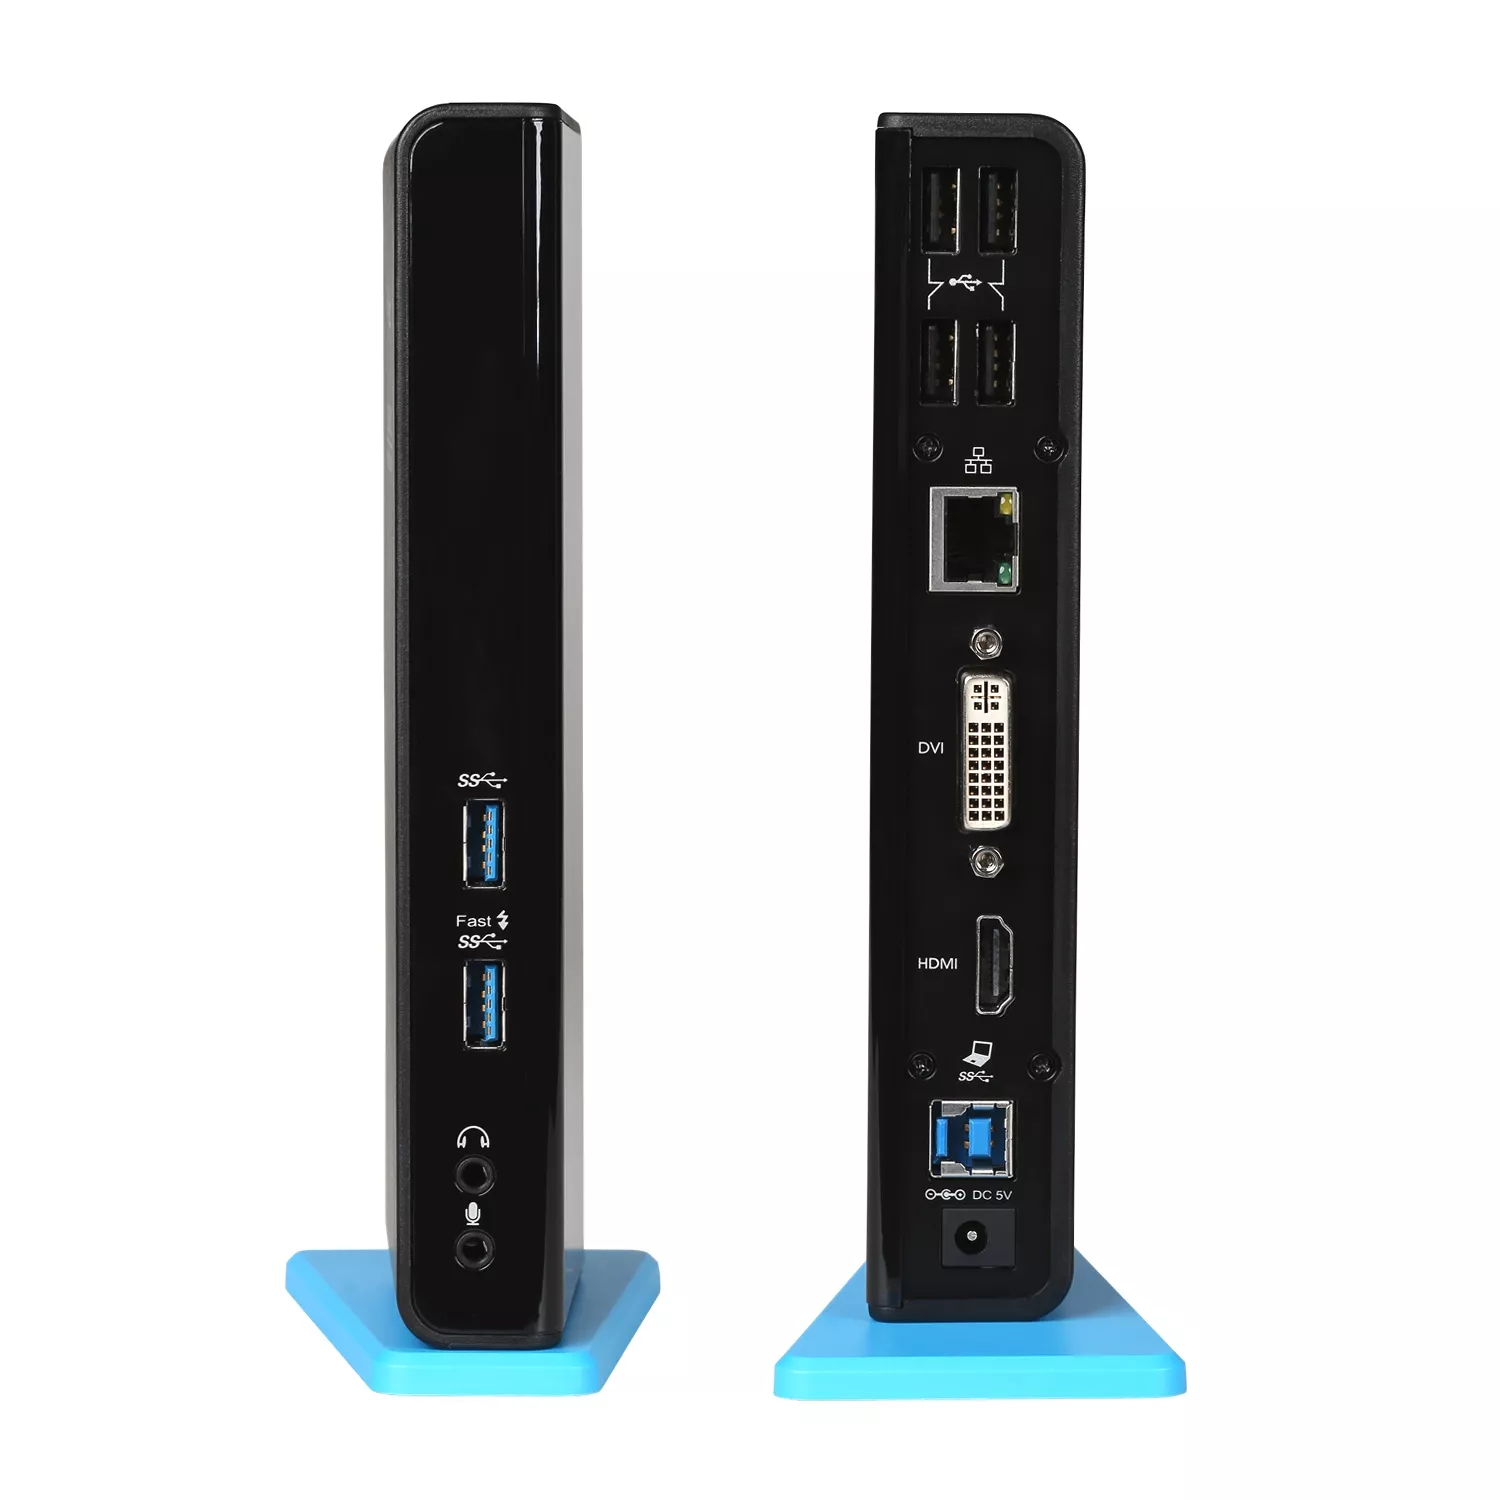 Vente I-TEC USB 3.0 Dual Docking Station 1xDVI 1xHDMI i-tec au meilleur prix - visuel 2